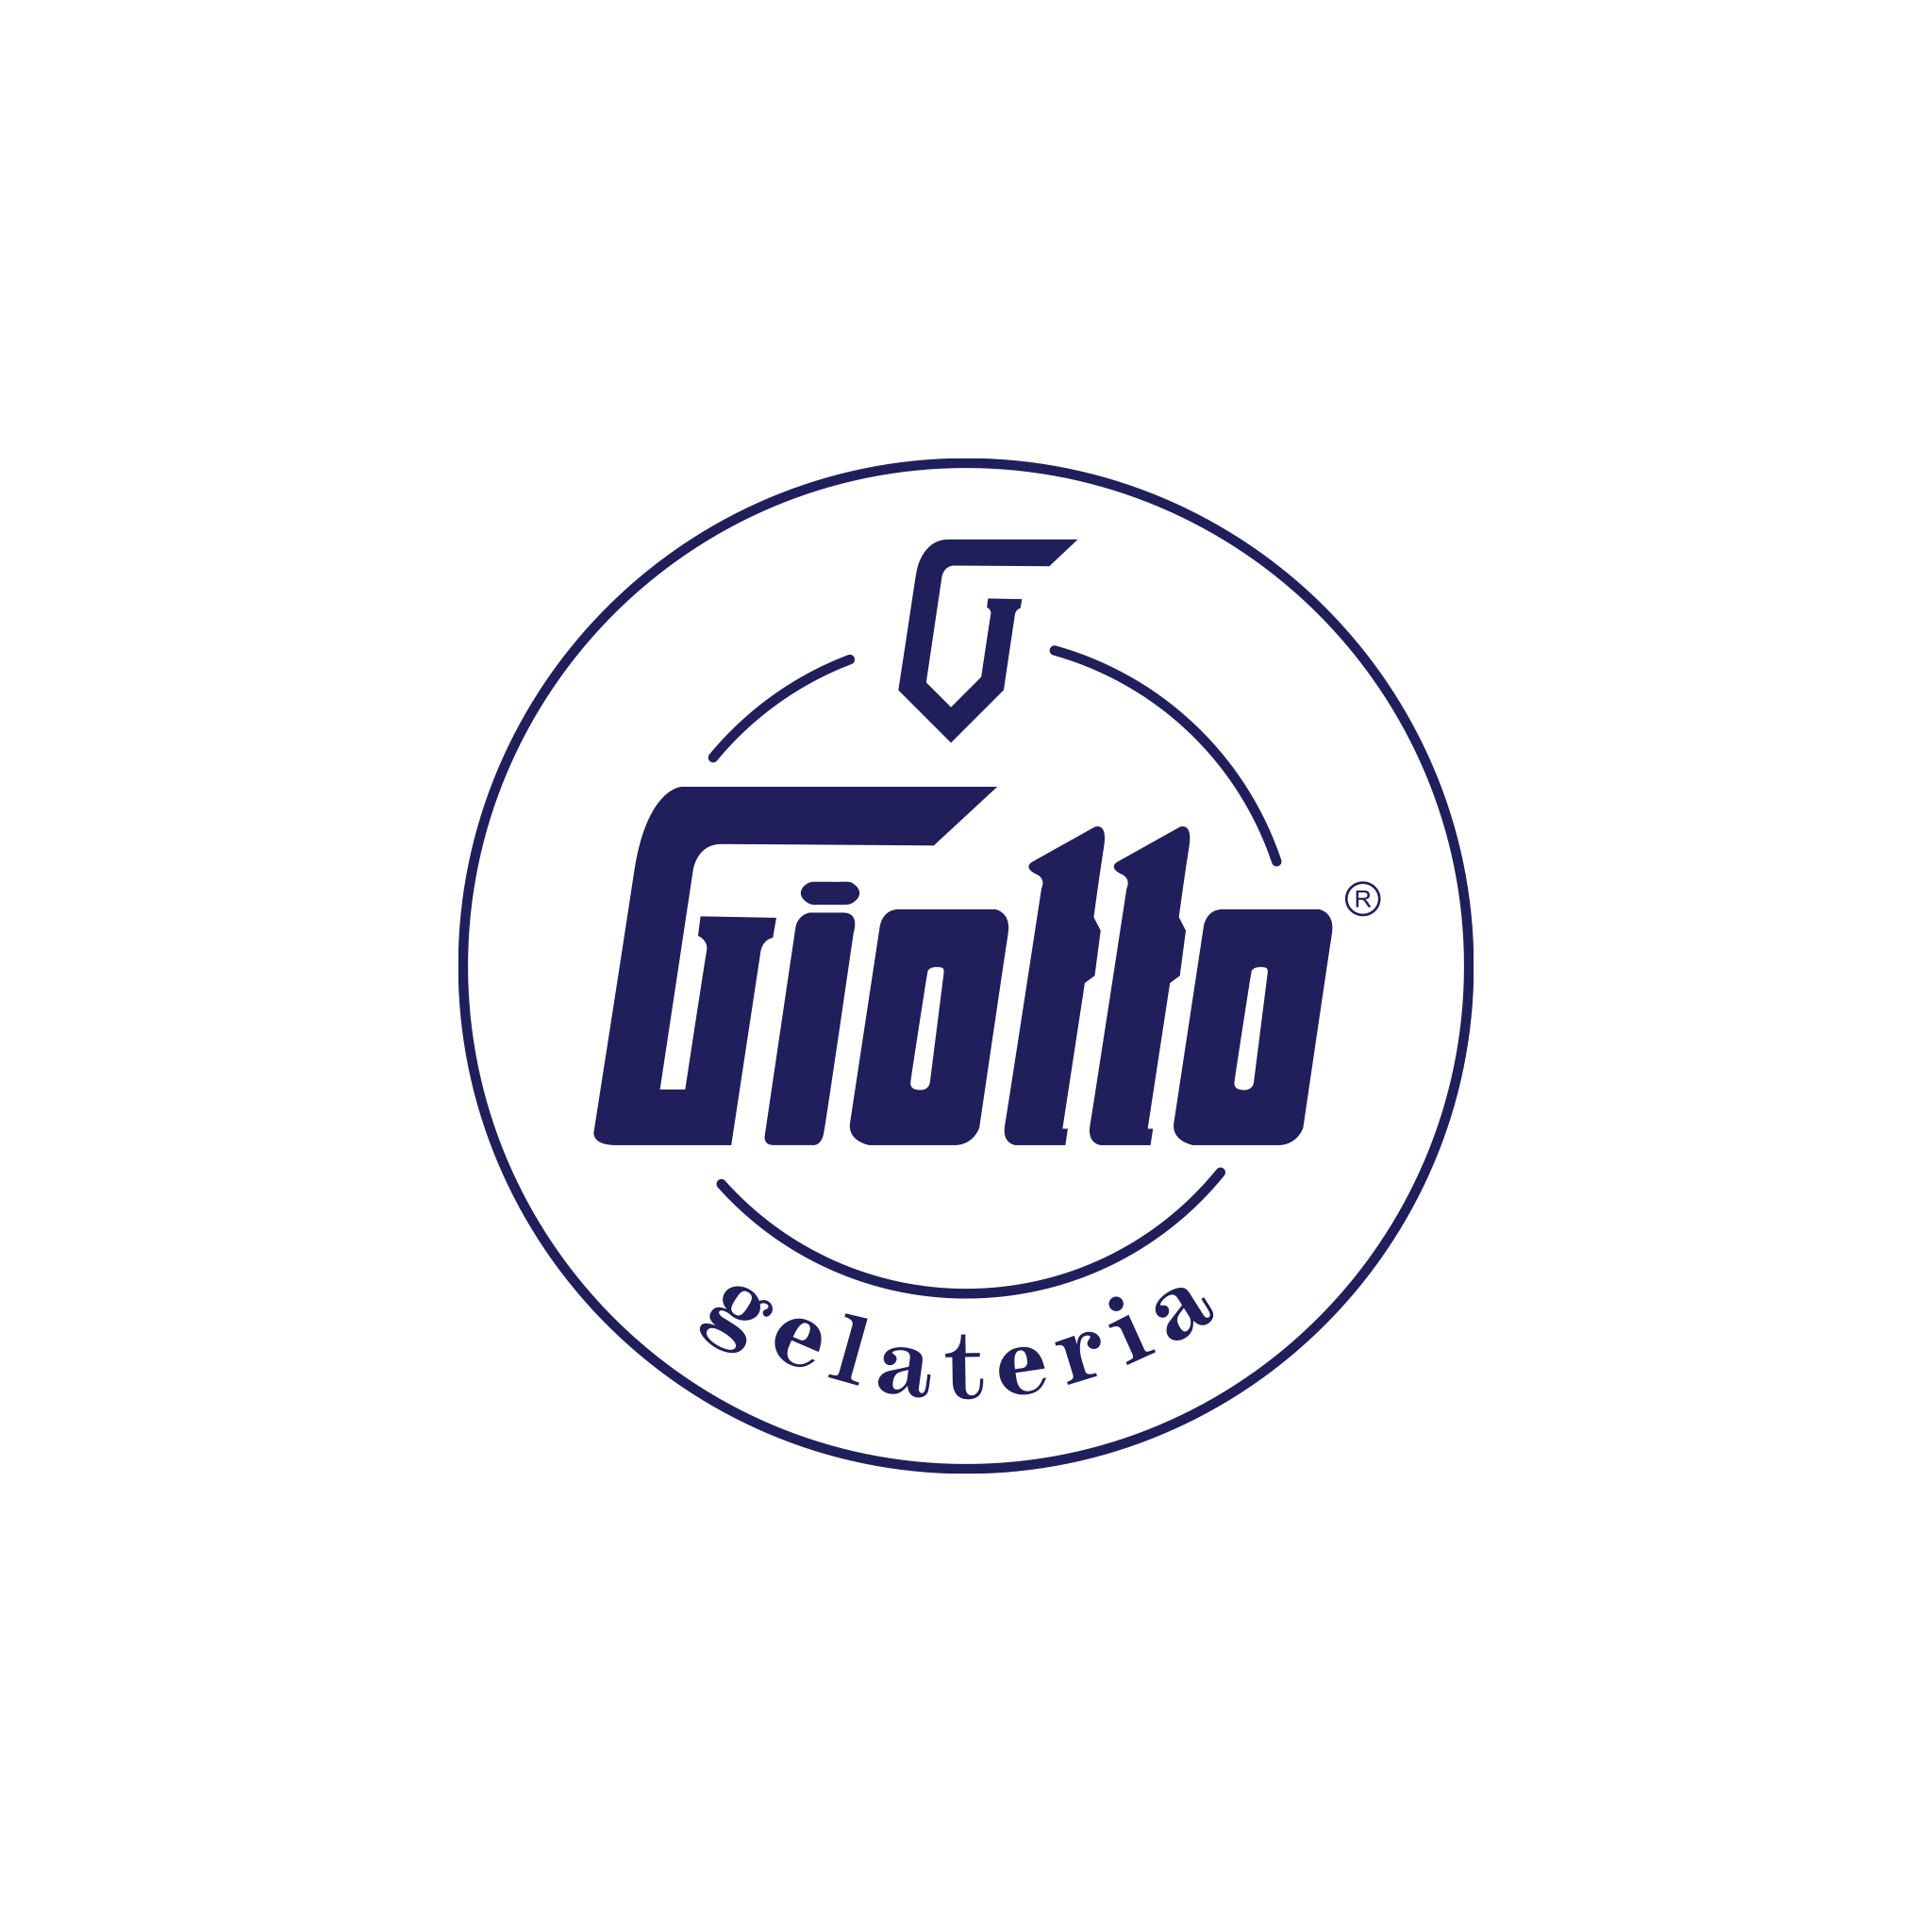 Giotto Gelateria Logo